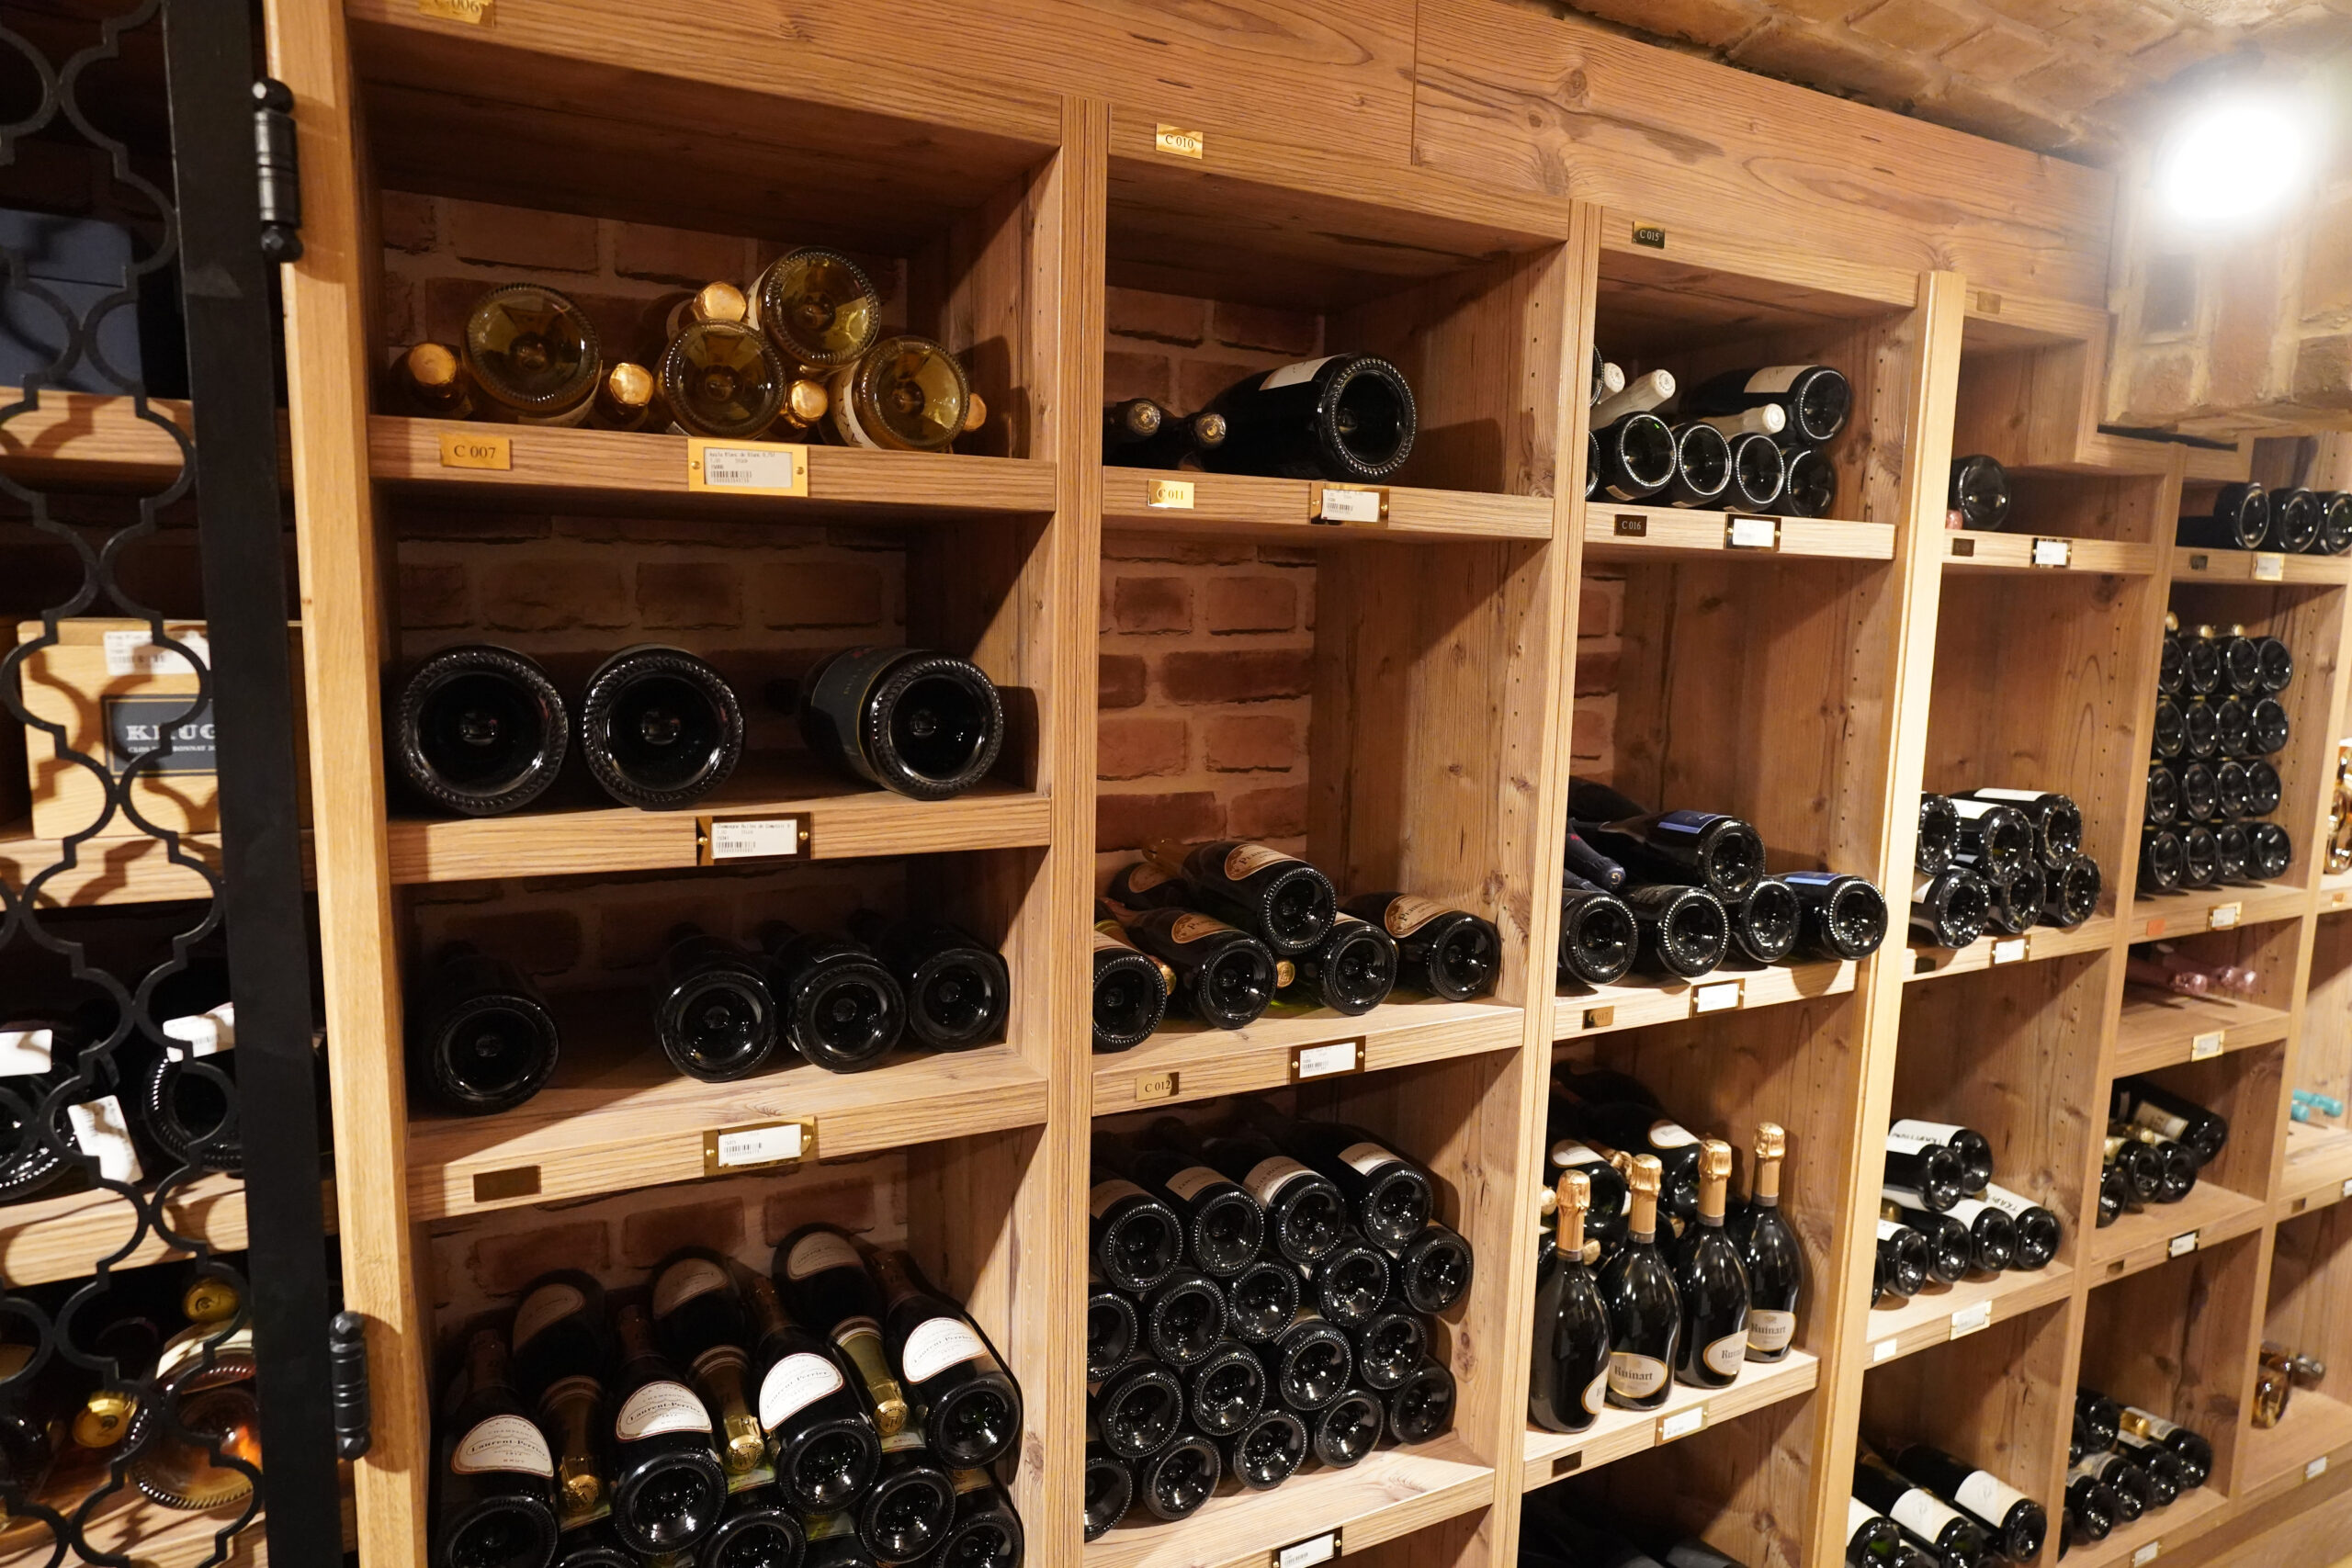 Rotweinflaschen liegen in Regalen im Weinkeller des Hamburger Luxushotels Vier Jahreszeiten. (Symbolbild)